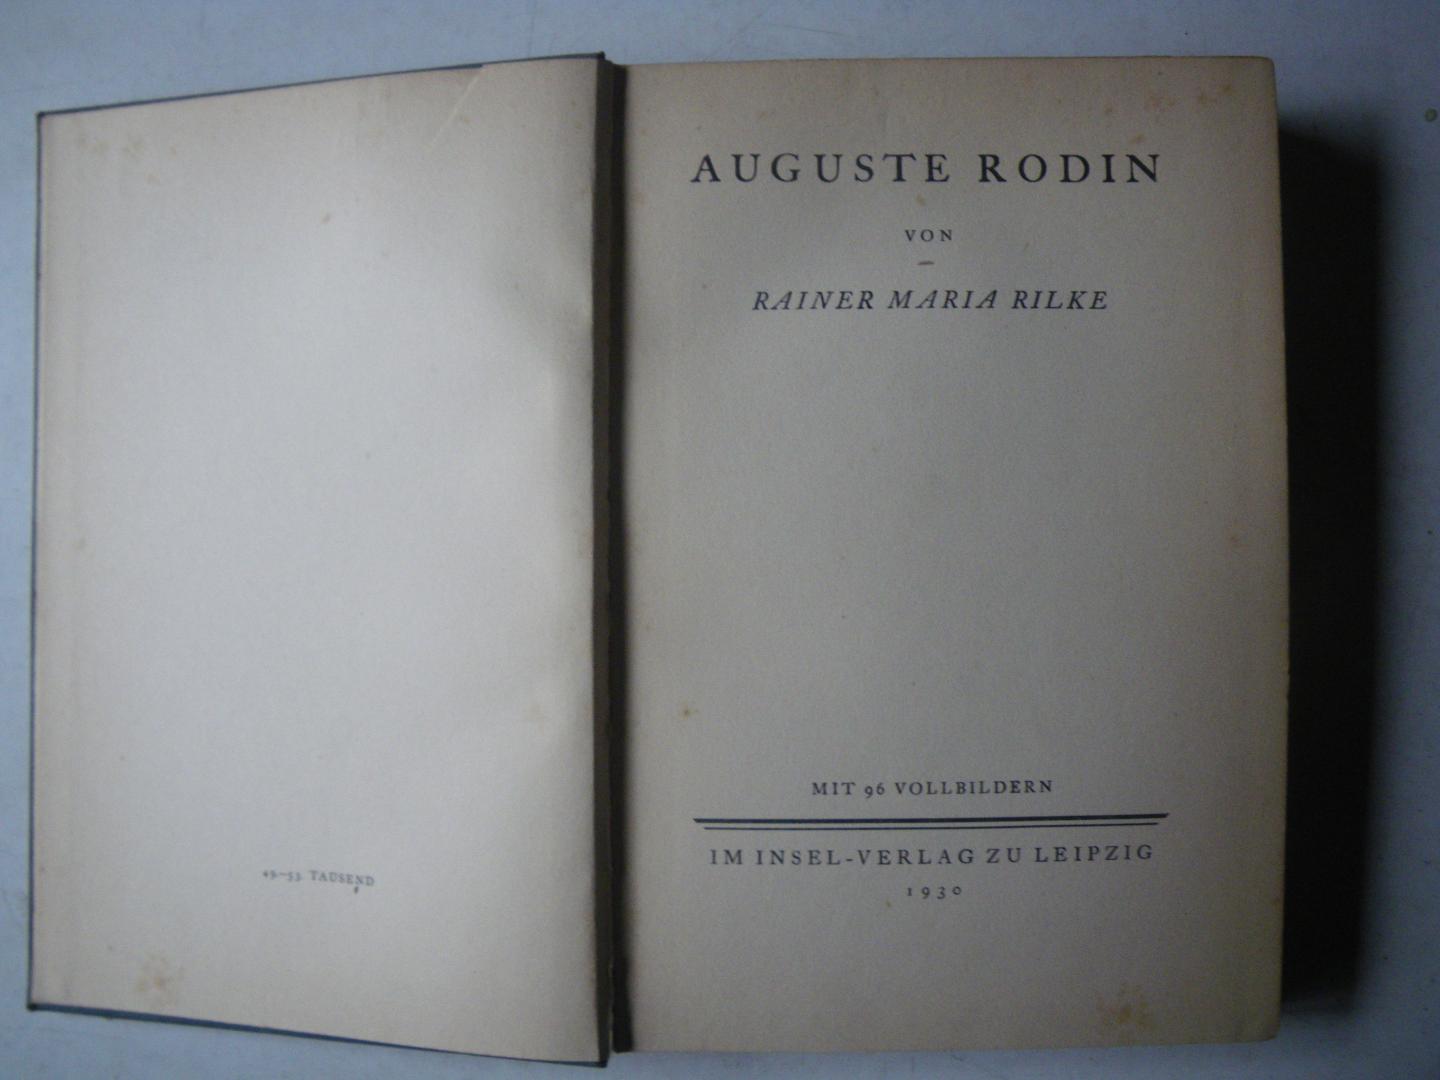 Rilke Rainer Maria - Auguste Rodin Mit 96 Vollbildern